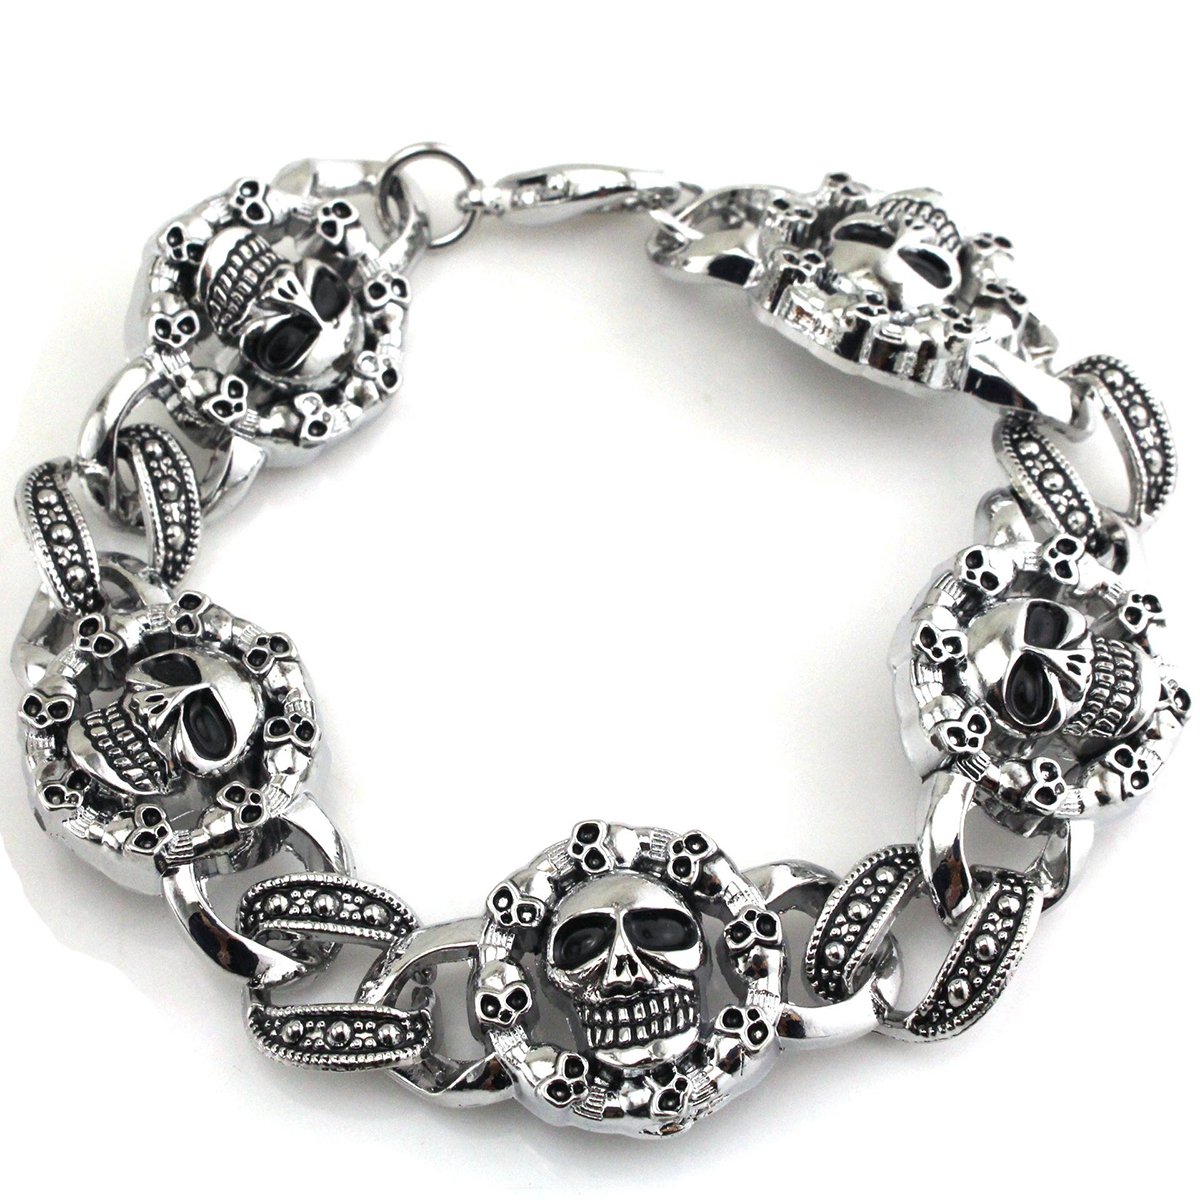 Punk Stainless Steel Bracelet For Men / Gothic Double Skull Heads Cuff Bracelets / Fashion  Men's Jewelry - HARD'N'HEAVY